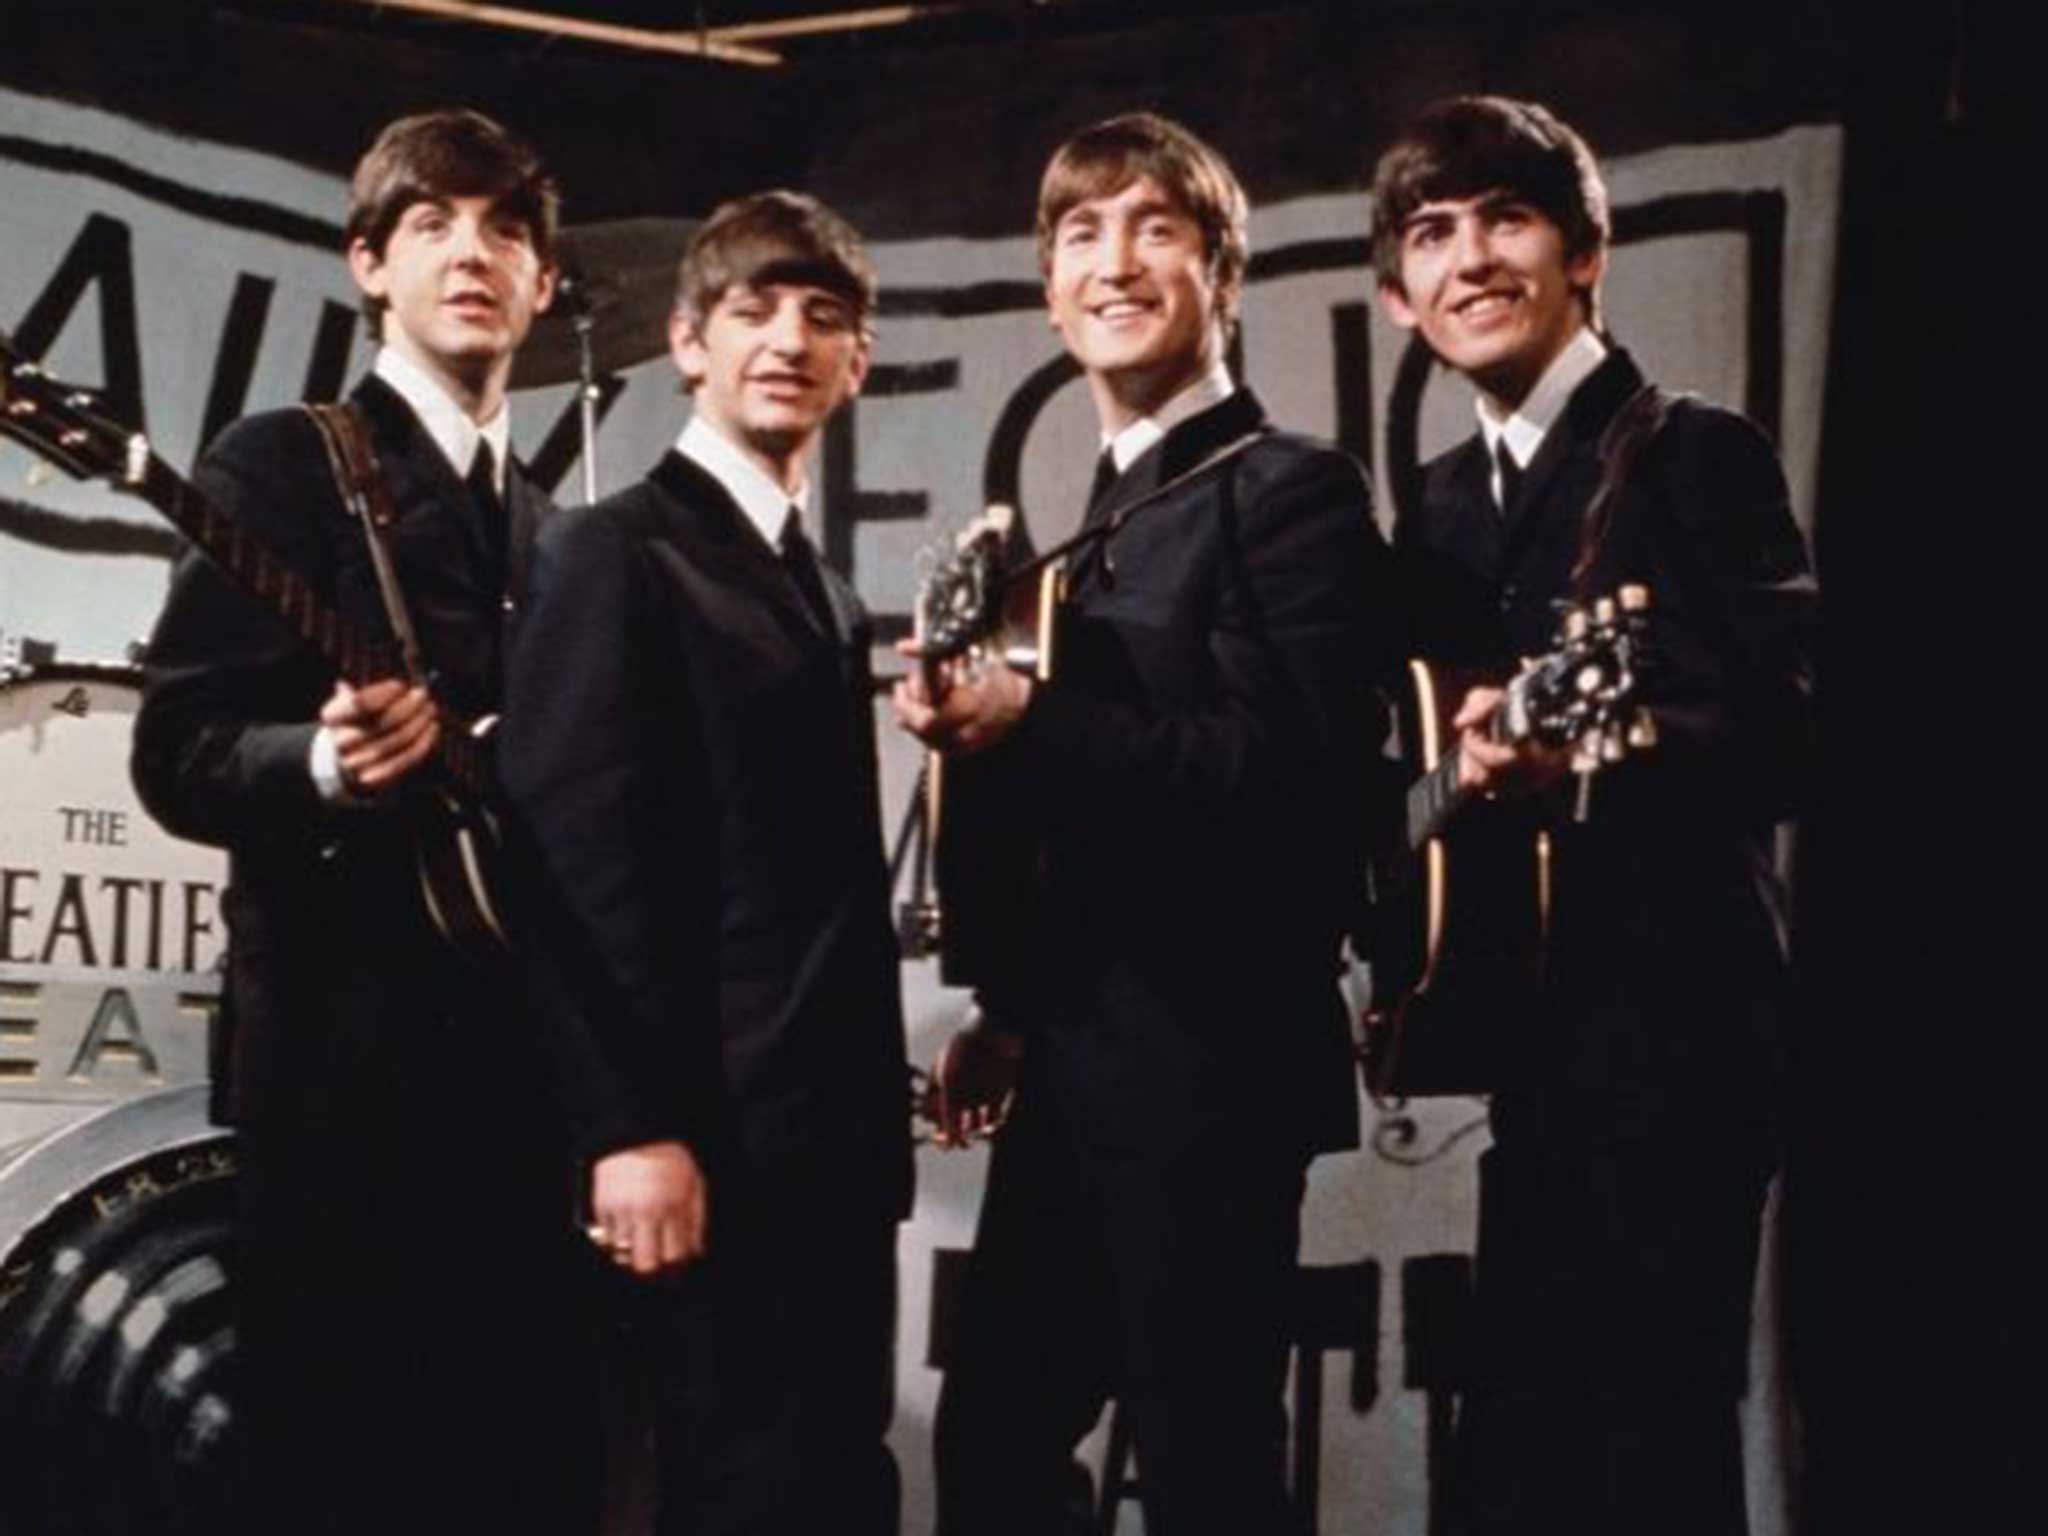 Sergeant pfeffer: Beatles in 1963